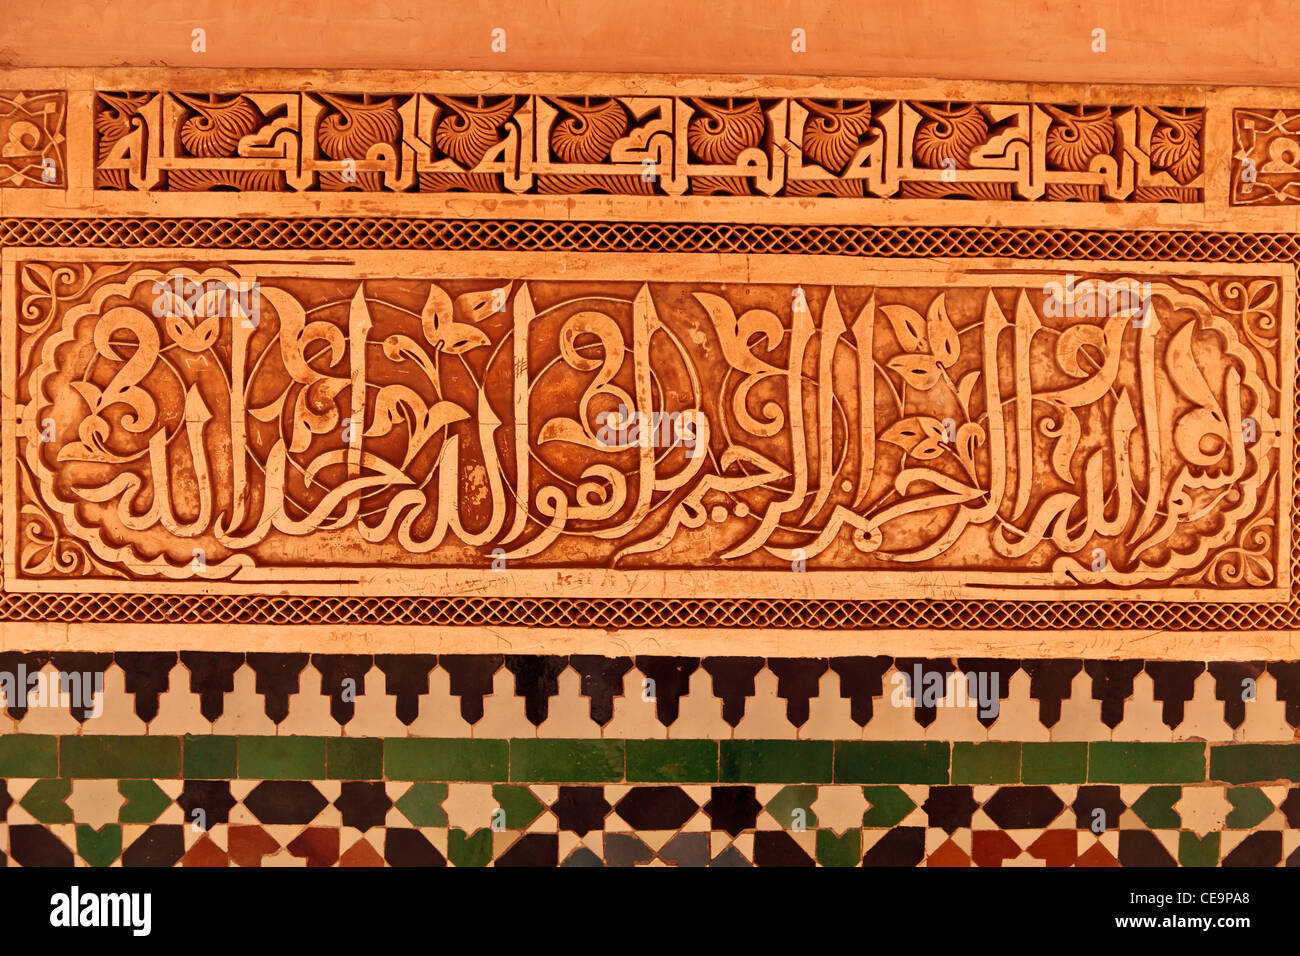 Détails de la mosaïque de la cour intérieure de la Medersa Ben Youssef, Marrakech, Maroc Banque D'Images